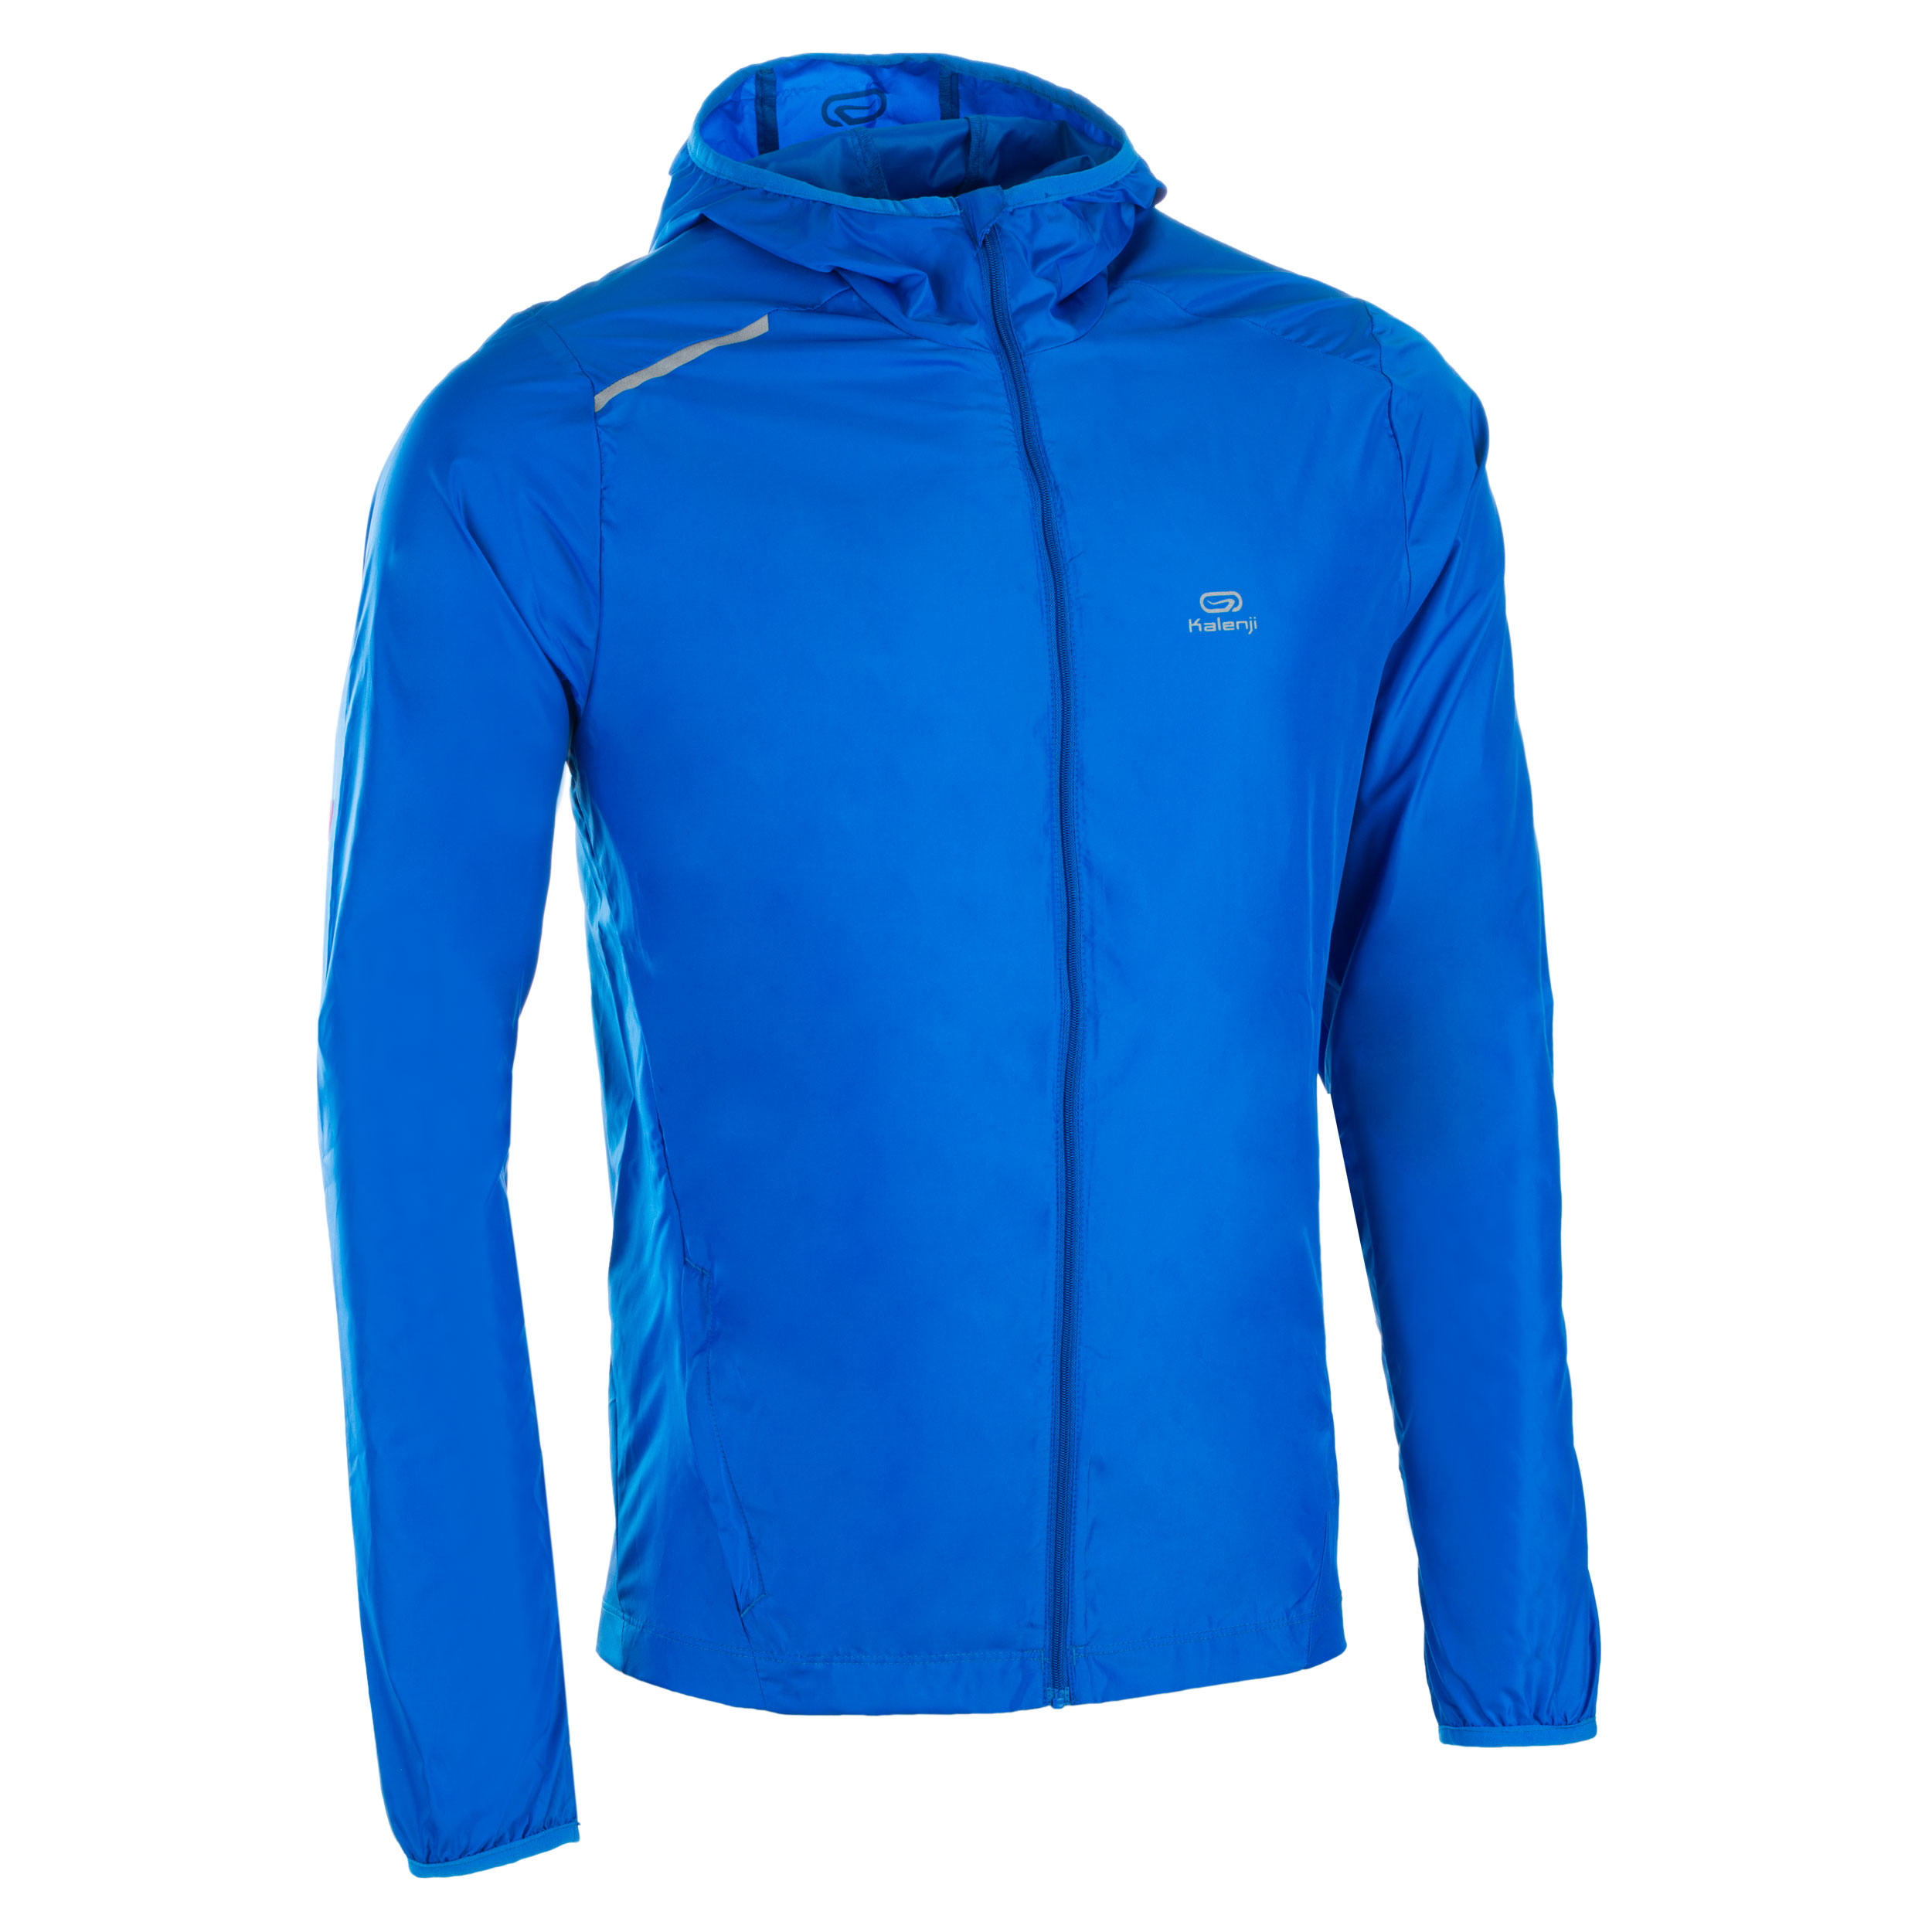 Jachetă Personalizabilă protecție vânt Atletism Albastru Bărbați La Oferta Online decathlon imagine La Oferta Online